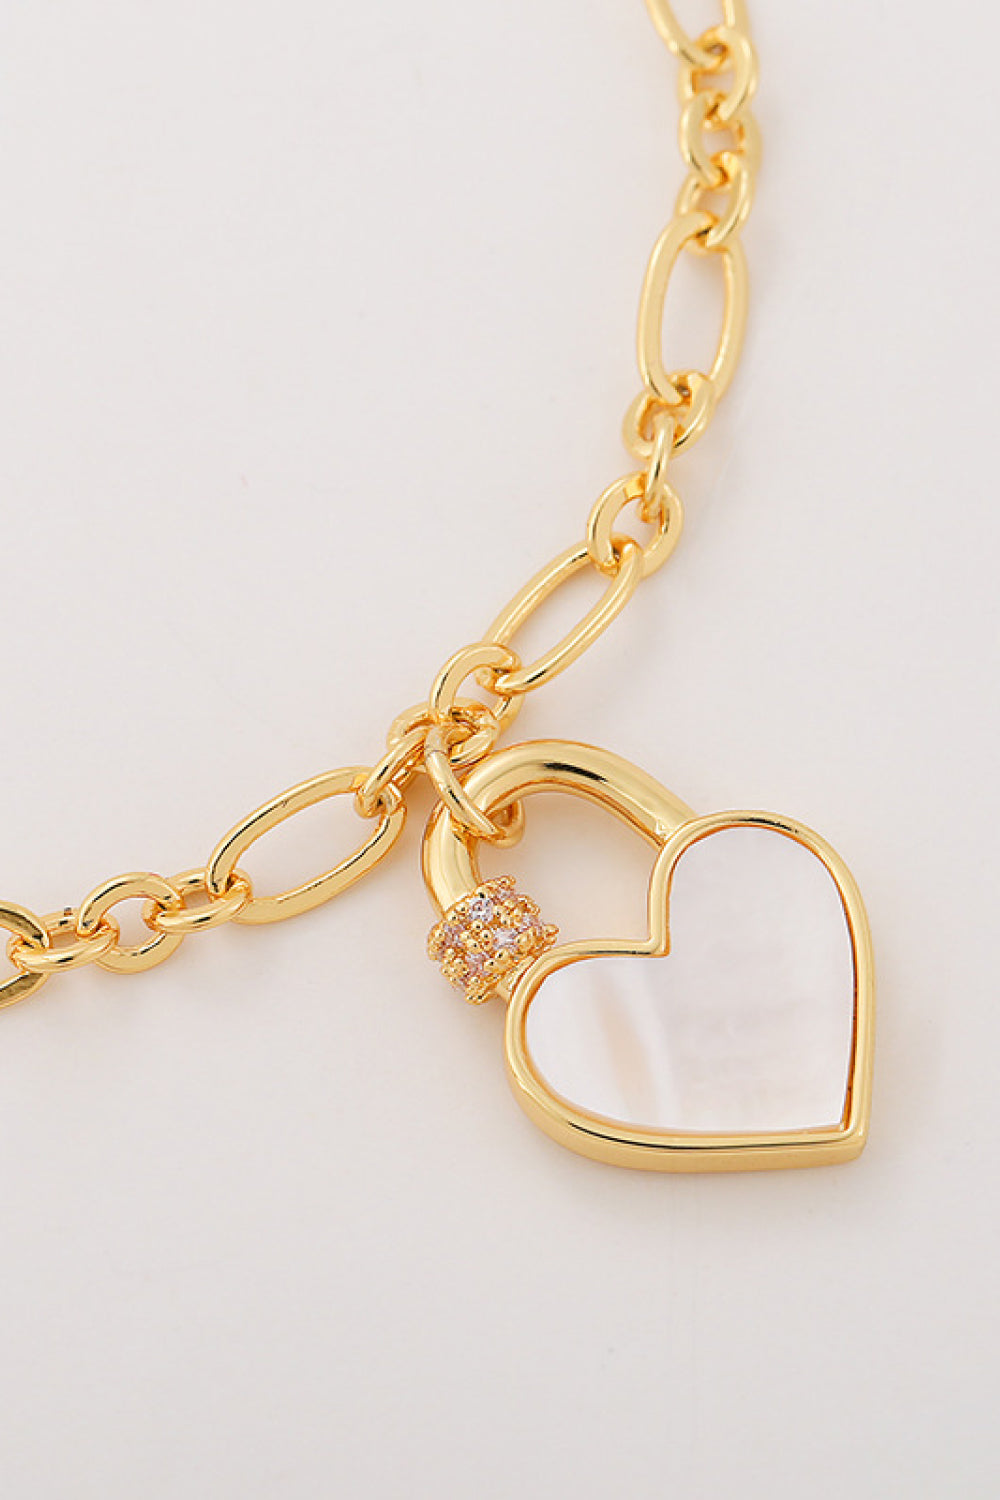 Heart Lock Charm Bracelet - Women’s Jewelry - Bracelets - 3 - 2024